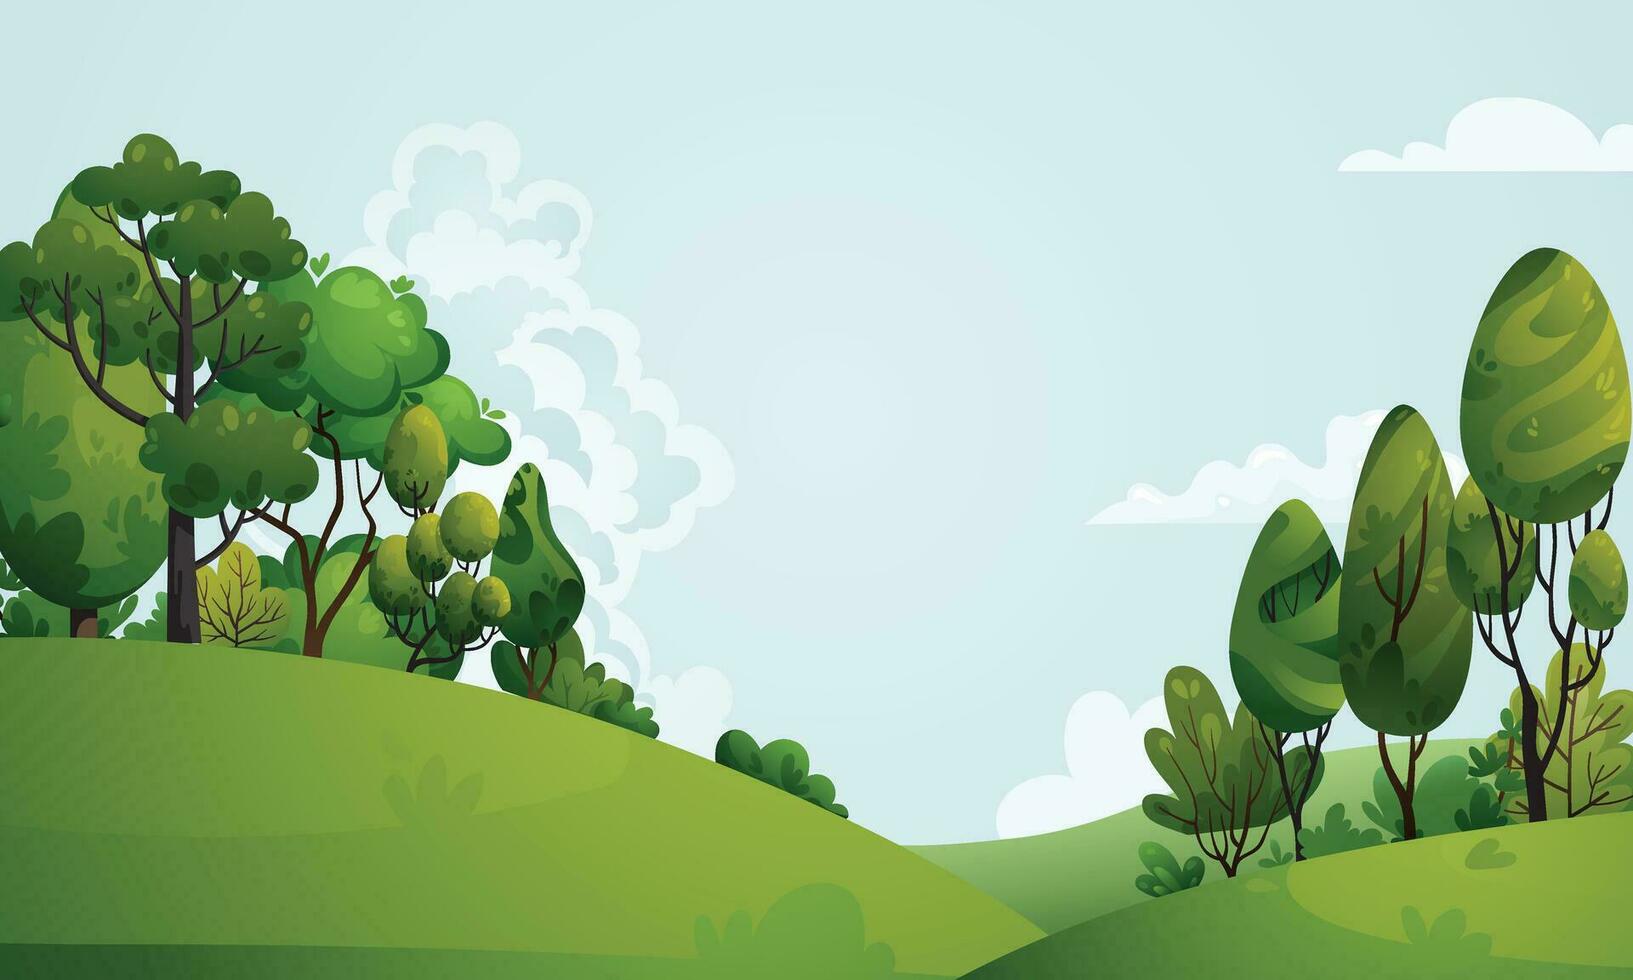 Sommer- Natur Landschaft mit Hügel, Grün Bäume, Gebüsch, Gras, Wiese. Frühling Landschaft mit Blau Himmel, Wolken, Wald, Park, Sträucher, Bäume im Karikatur Stil. Wald Hintergrund Vektor Illustration.